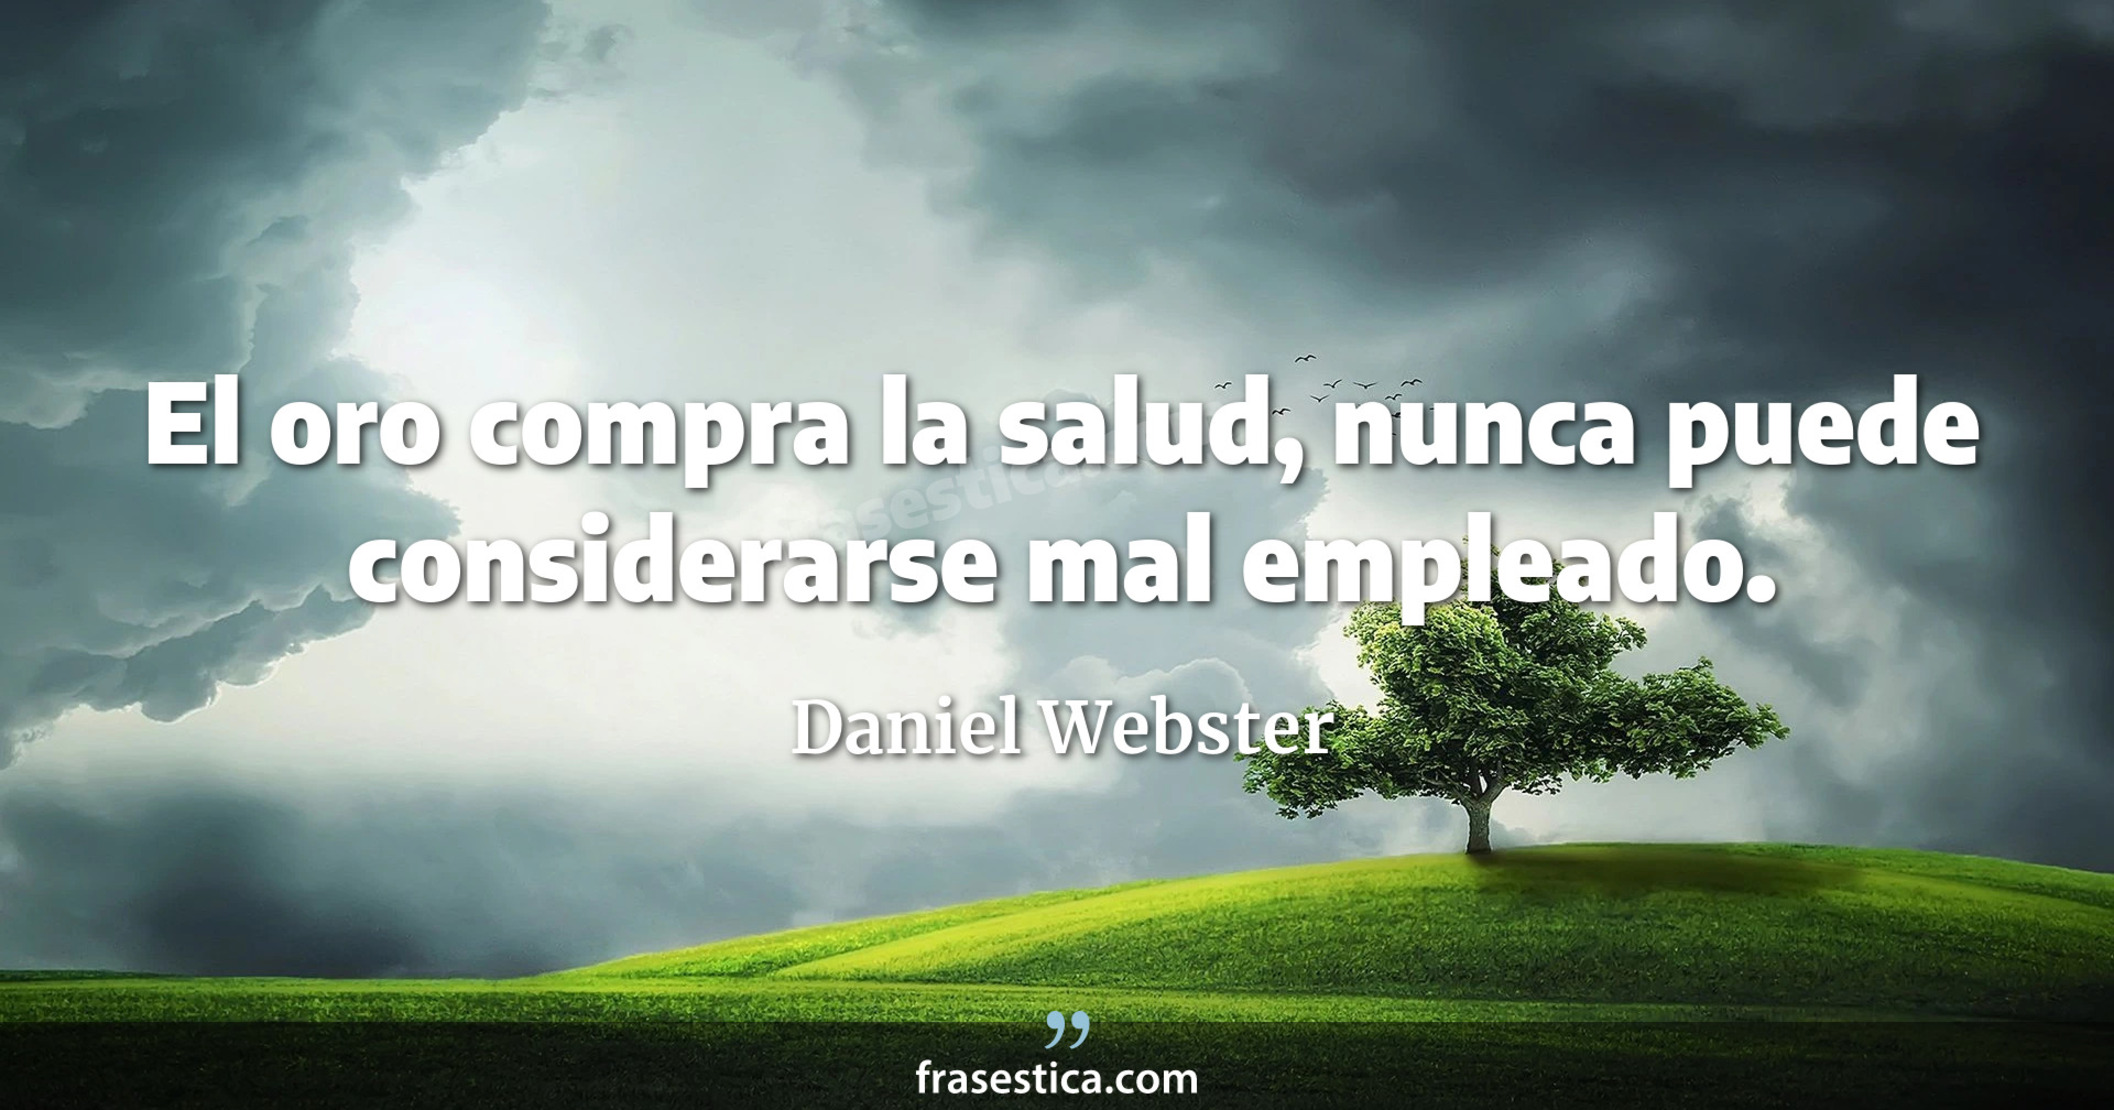 El oro compra la salud, nunca puede considerarse mal empleado. - Daniel Webster